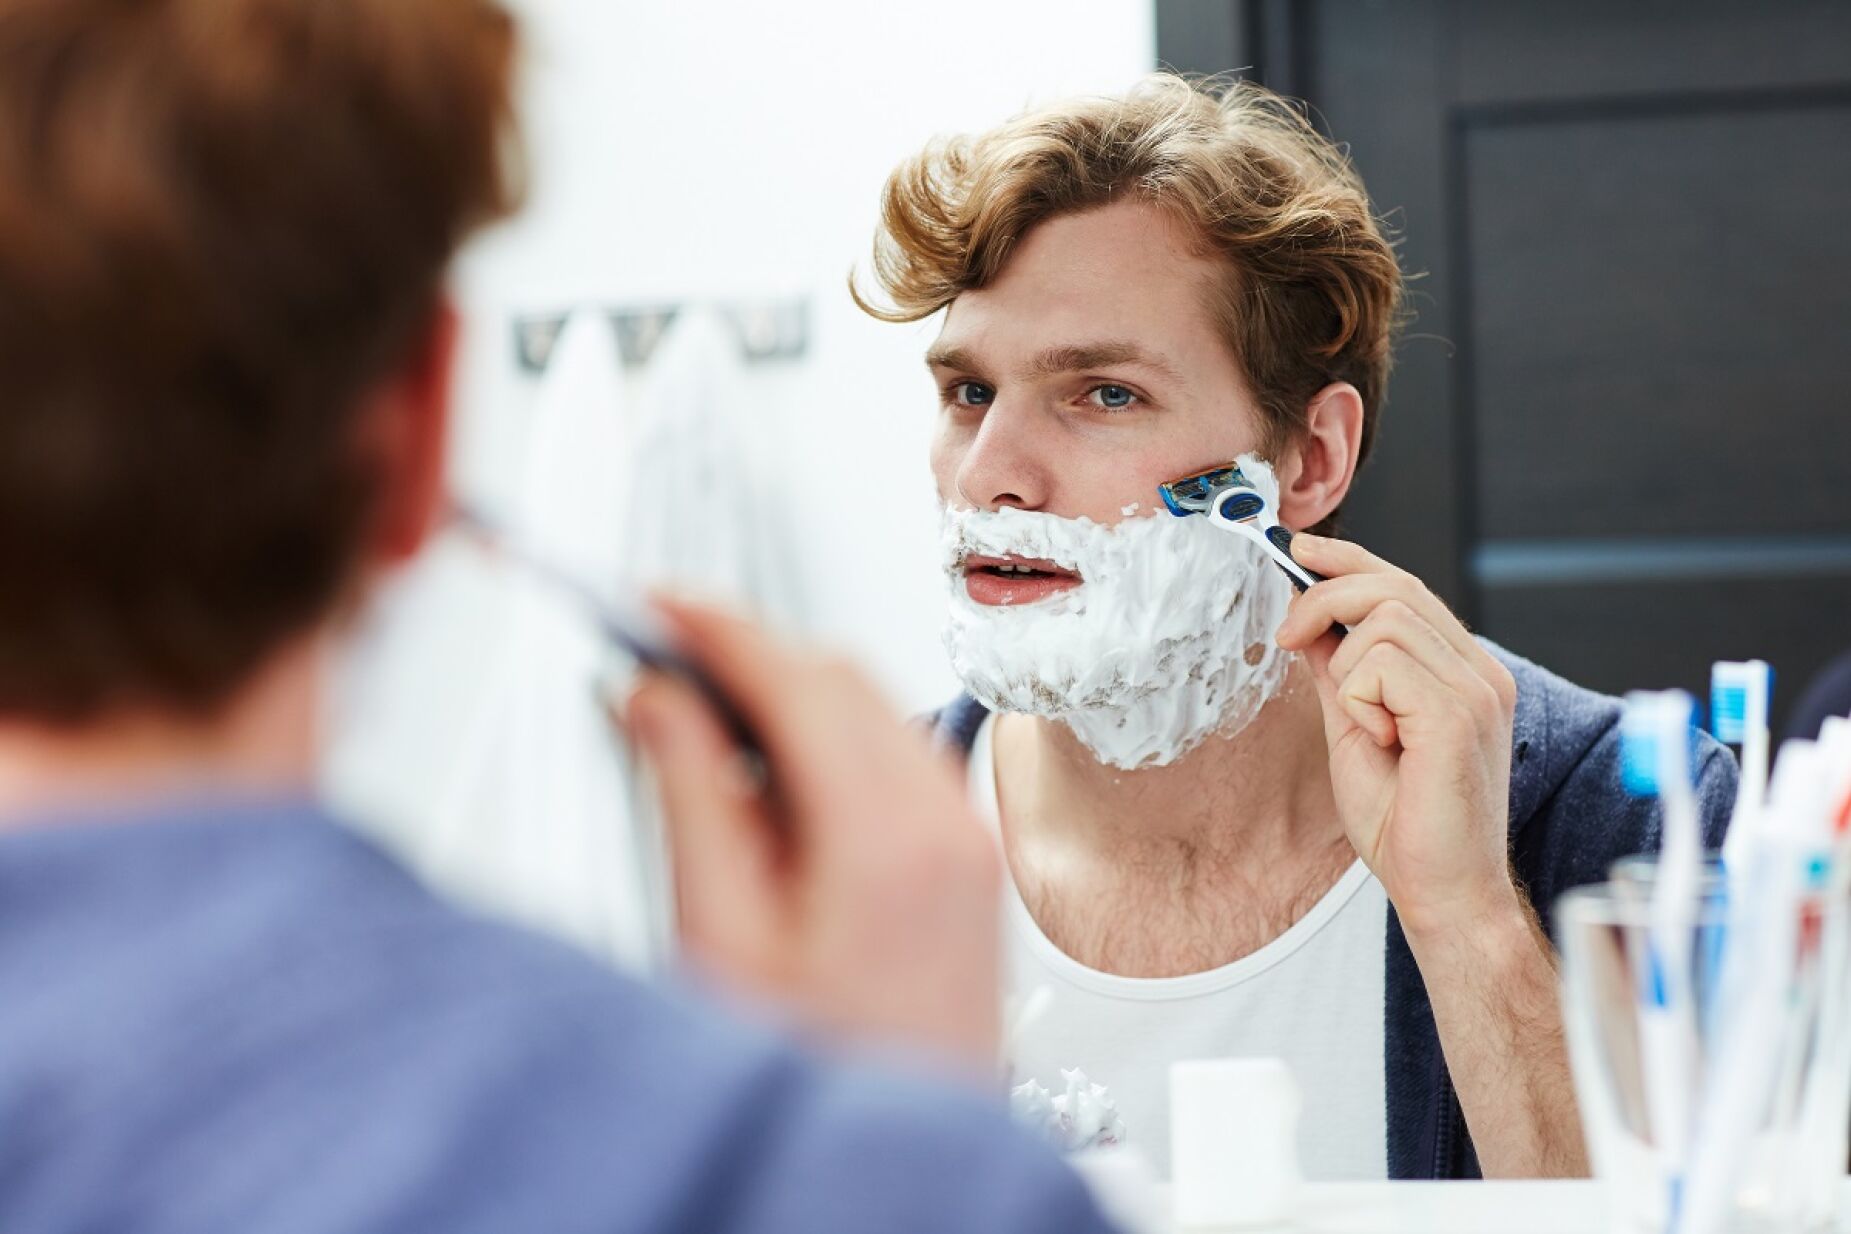 Quer livrar-se da barba? 3 essenciais a saber antes de arriscar